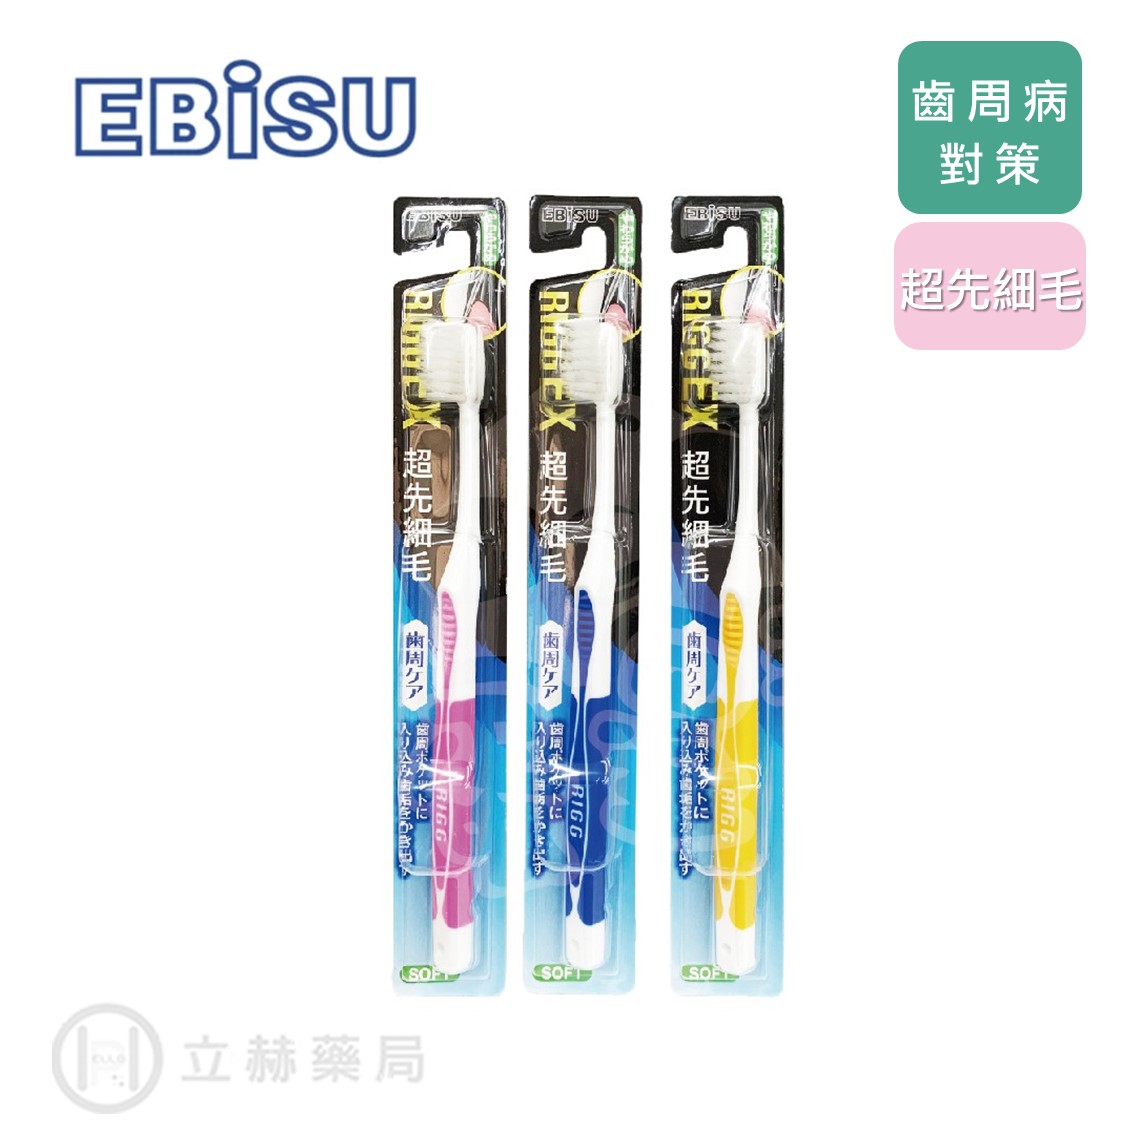 日本 EBISU 惠比壽 齒周病對策 超先細毛牙刷 B-A82 日本原裝 隨機不挑色 公司貨【立赫藥局】